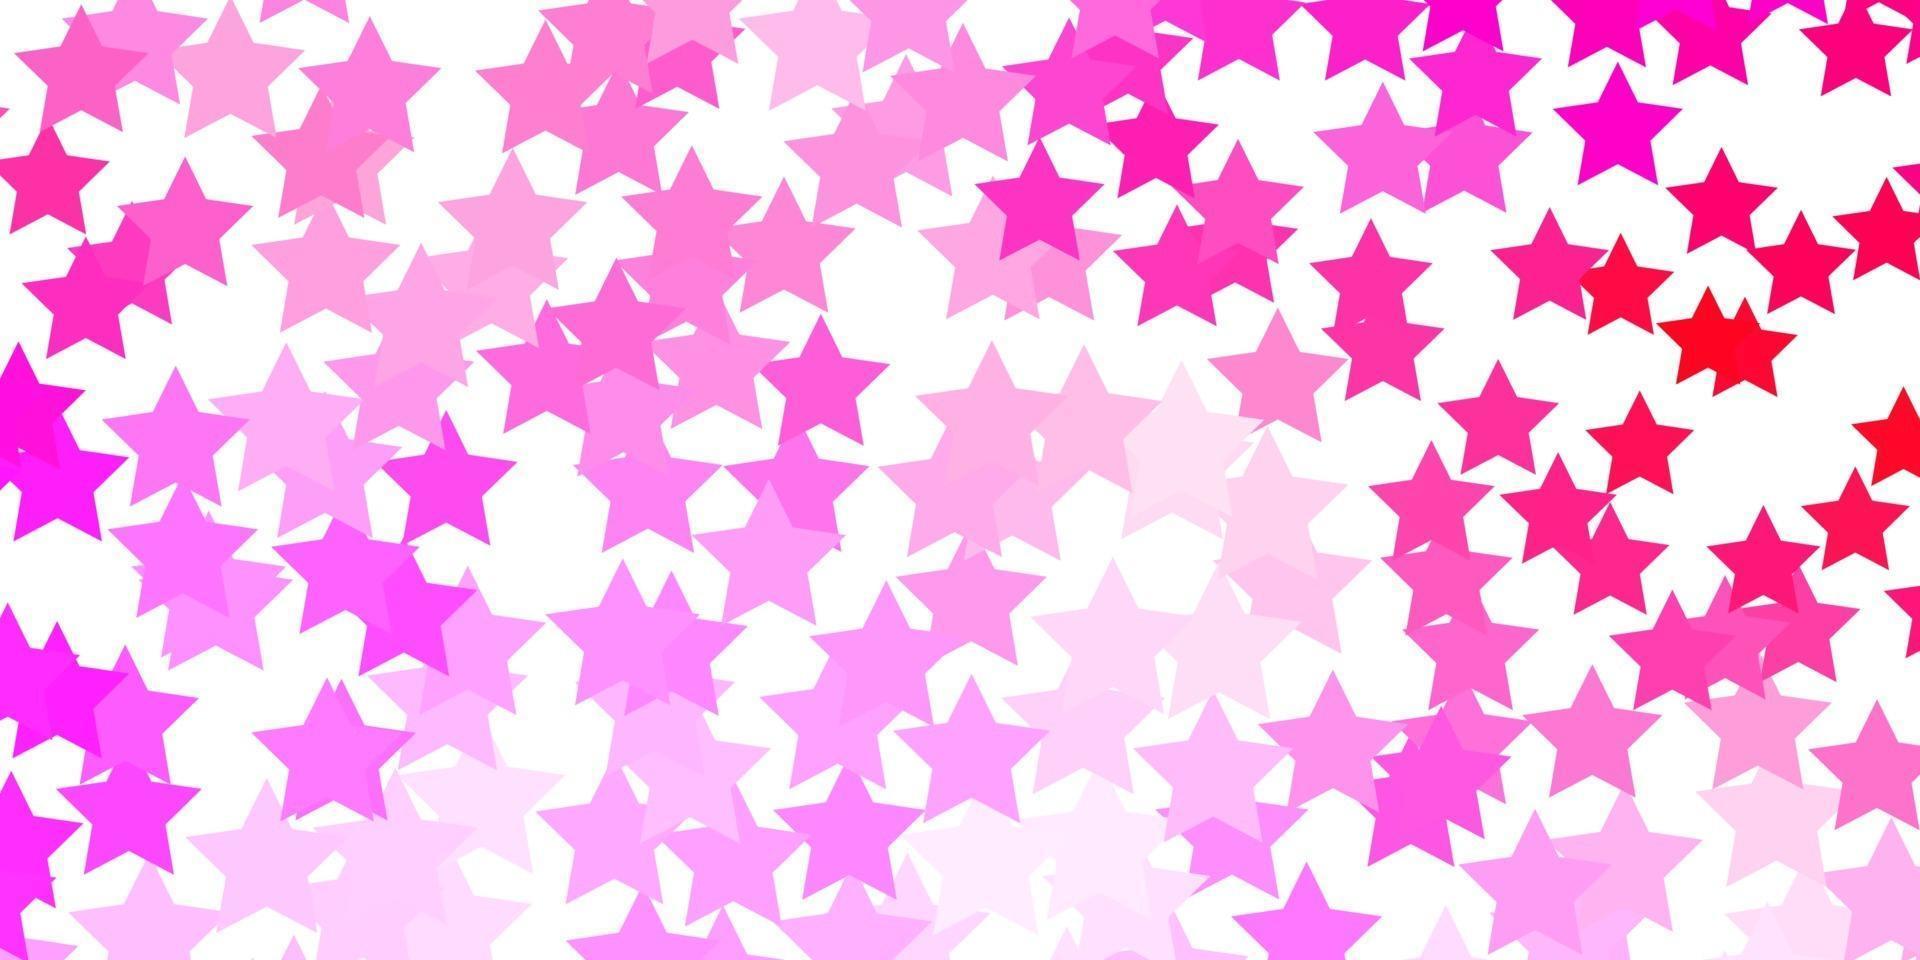 sfondo vettoriale rosa chiaro con stelle colorate.